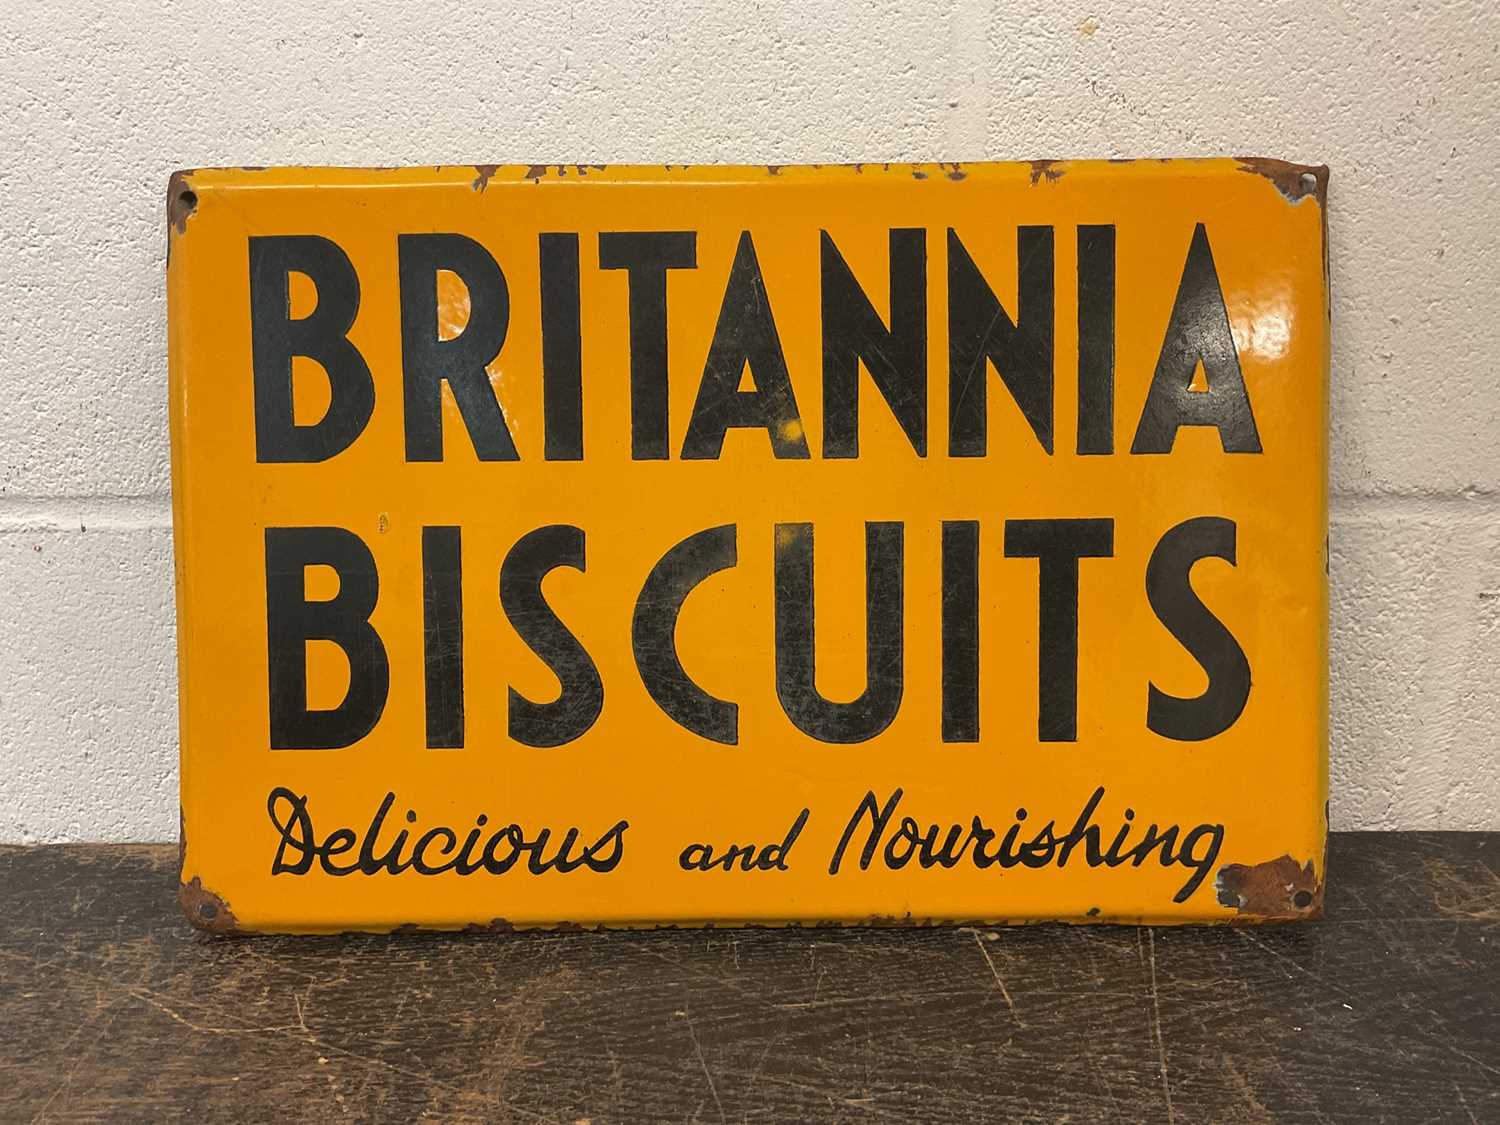 Britannia Biscuits enamel sign, 45cm x 30cm